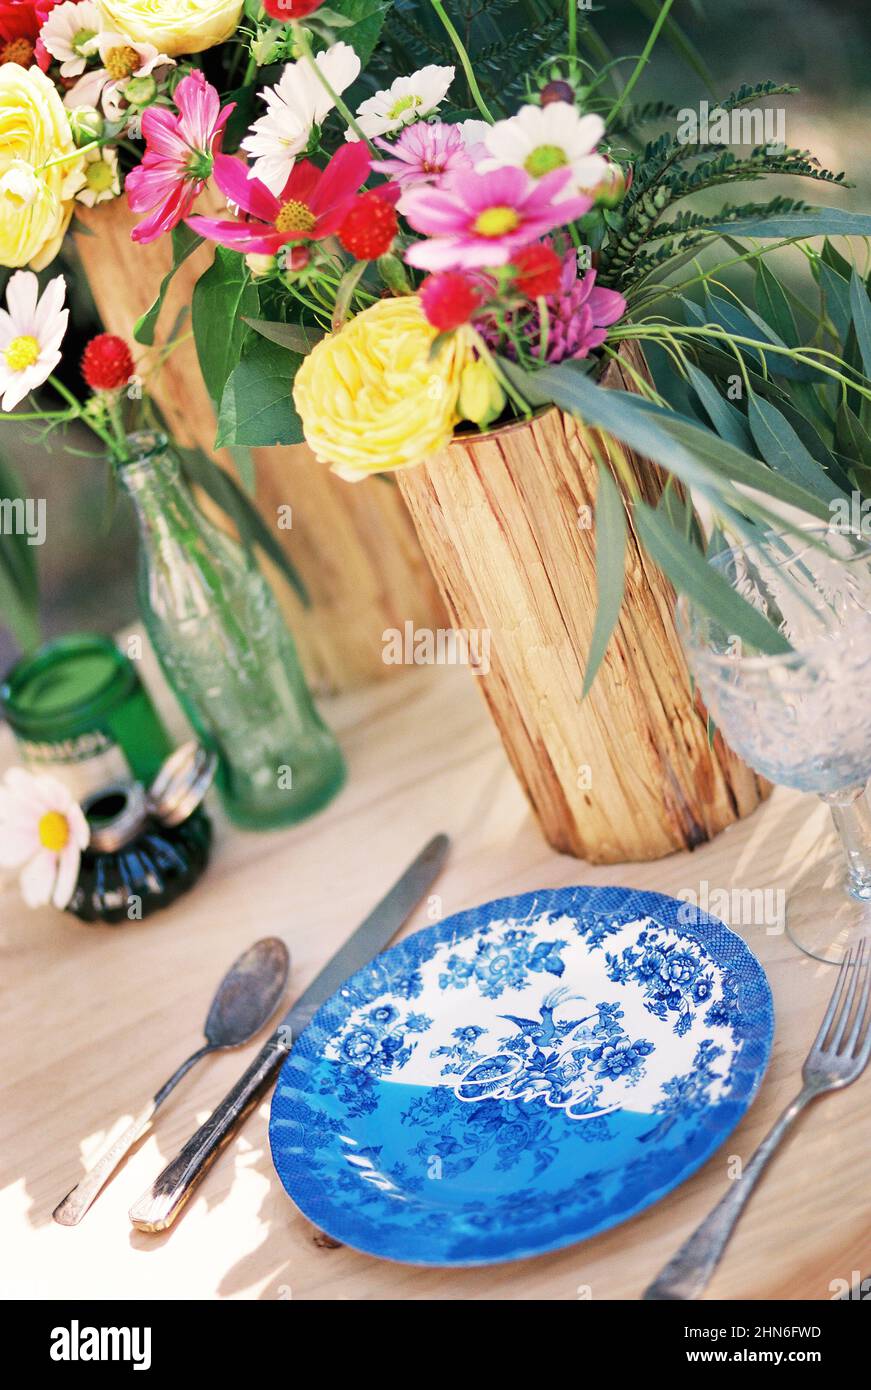 Table avec assiette antique et coutellerie et fleurs fraîches Banque D'Images